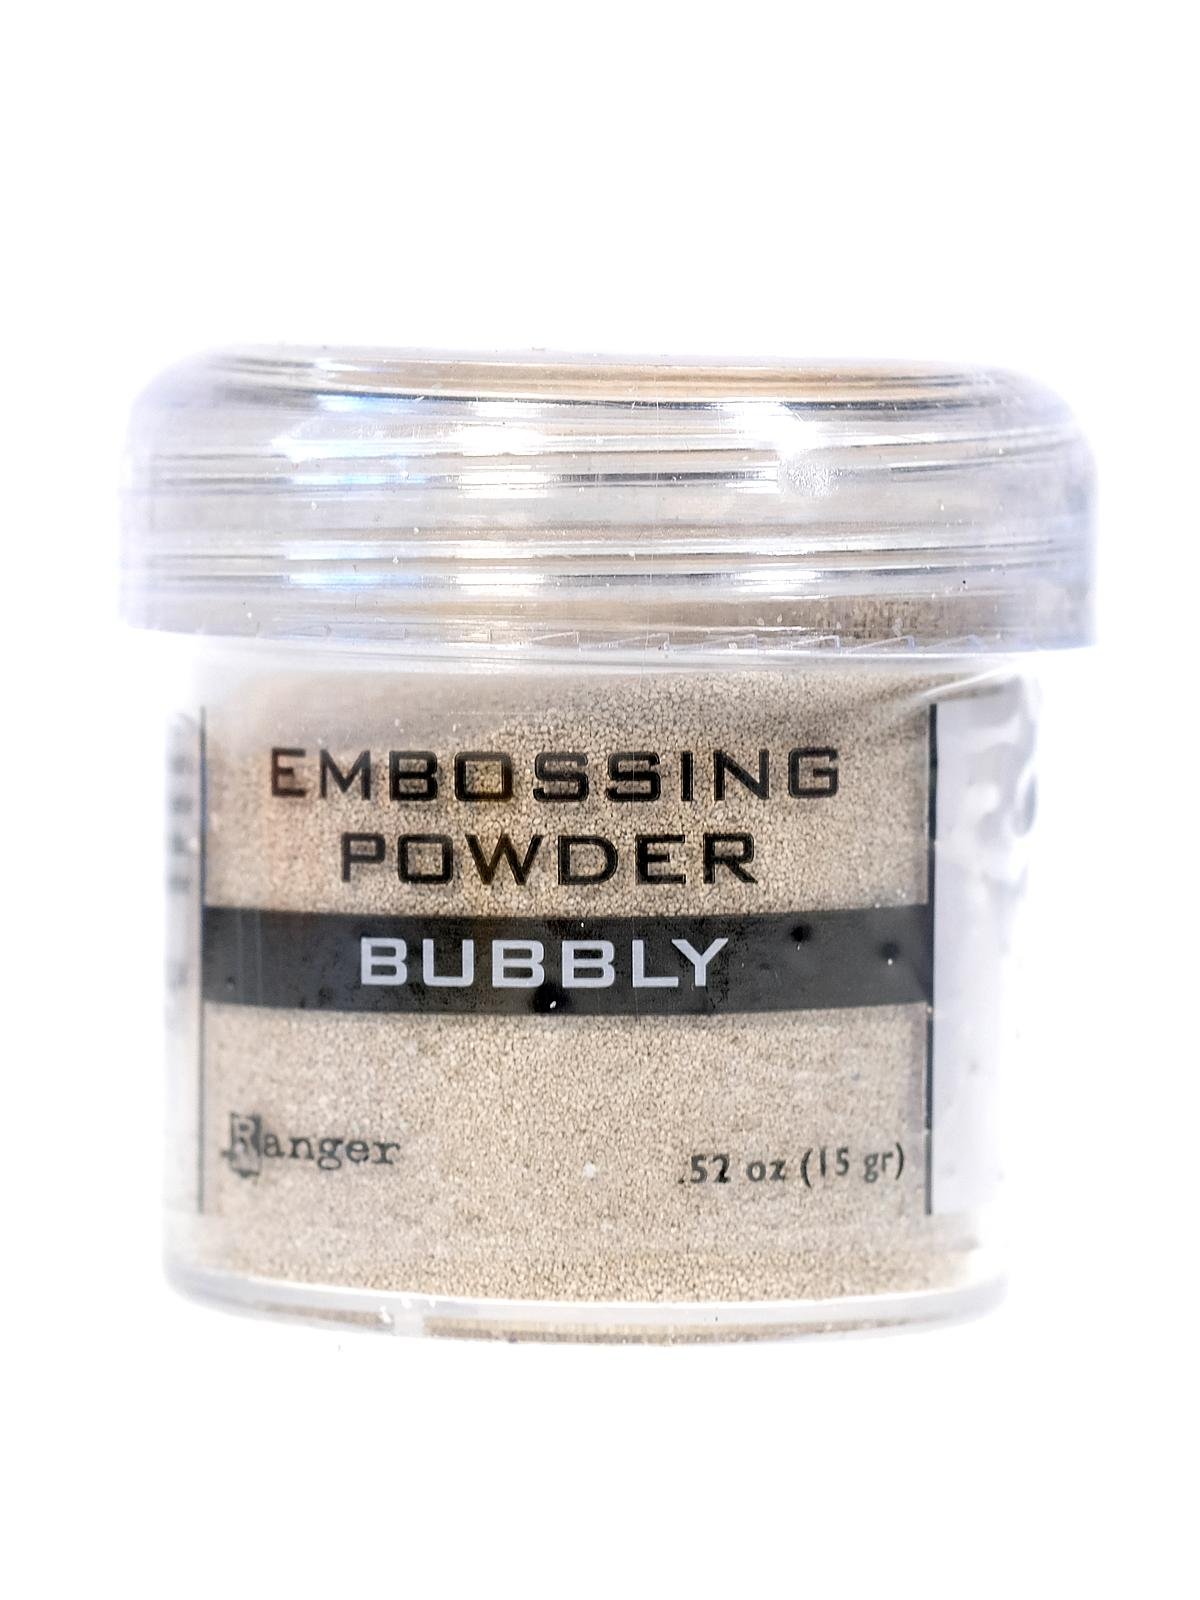 Ranger Embossing Powder, Gold Tinsel - 1 oz jar